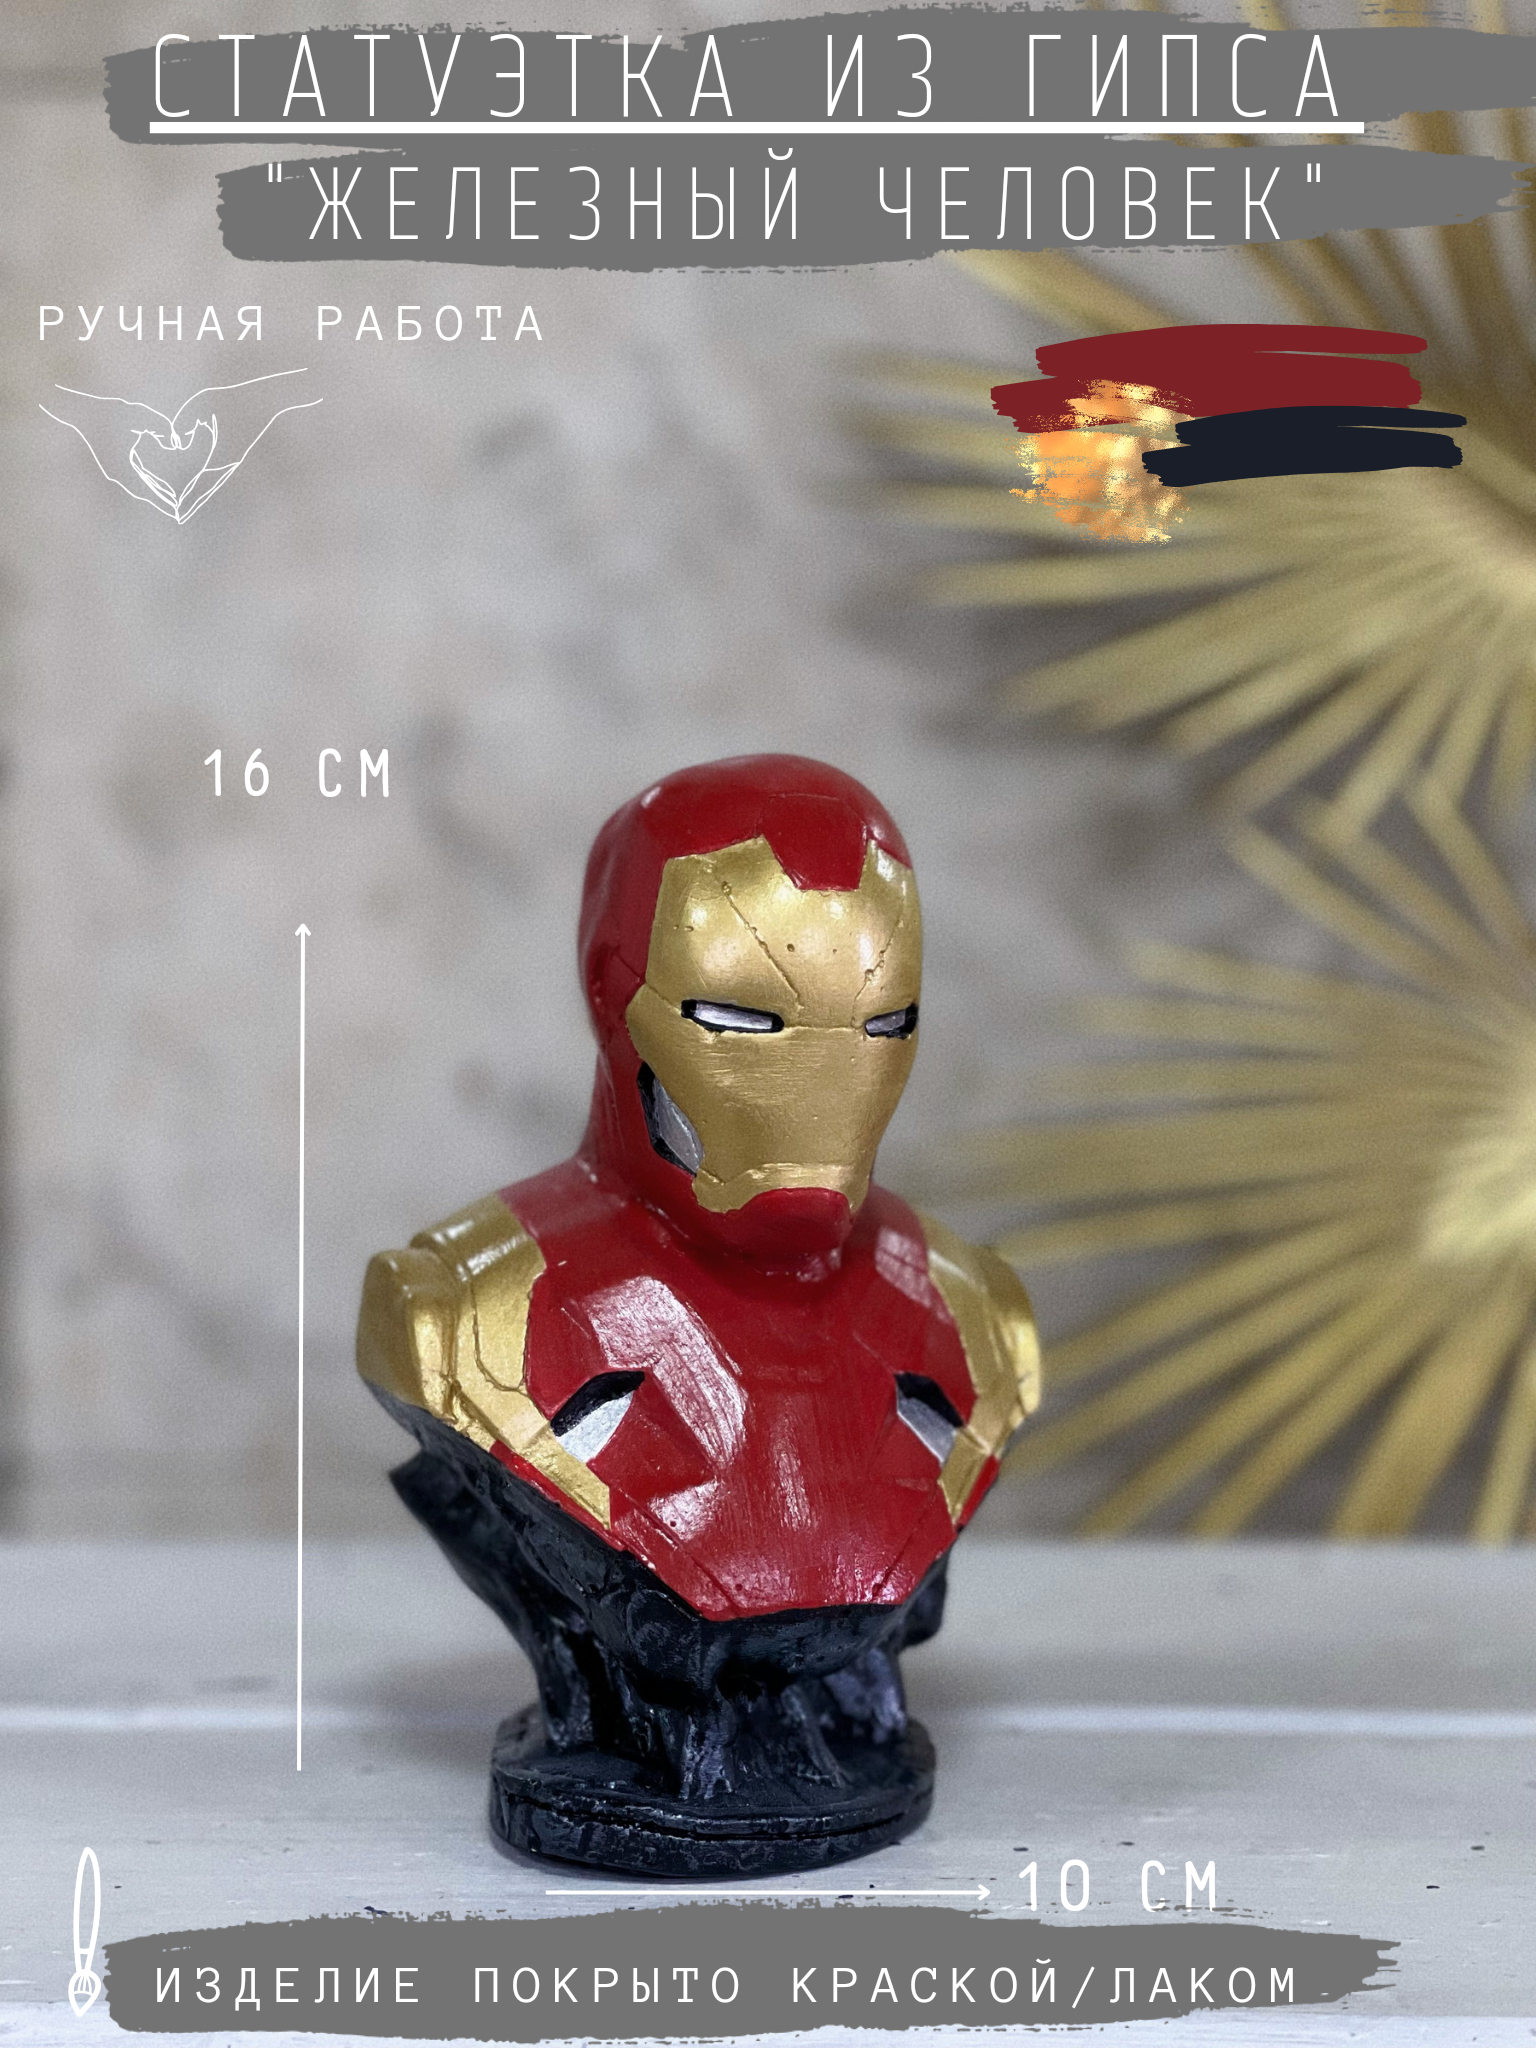 Статуэтка Железный человек в цвете, 16 см, гипс фигурка Iron man Marvel